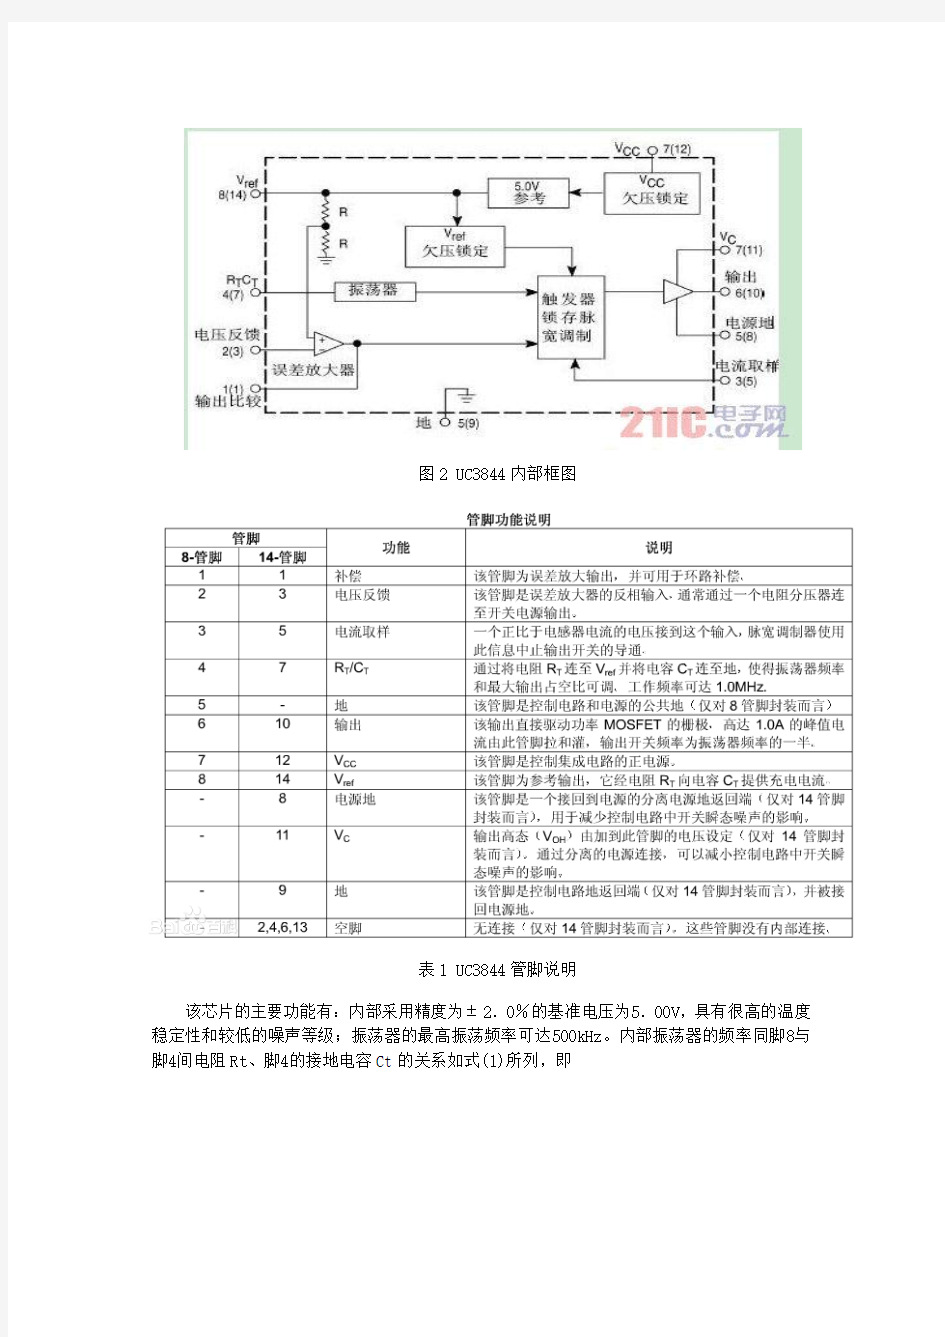 基于UC3844控制芯片的电路设计及调试(DOC)